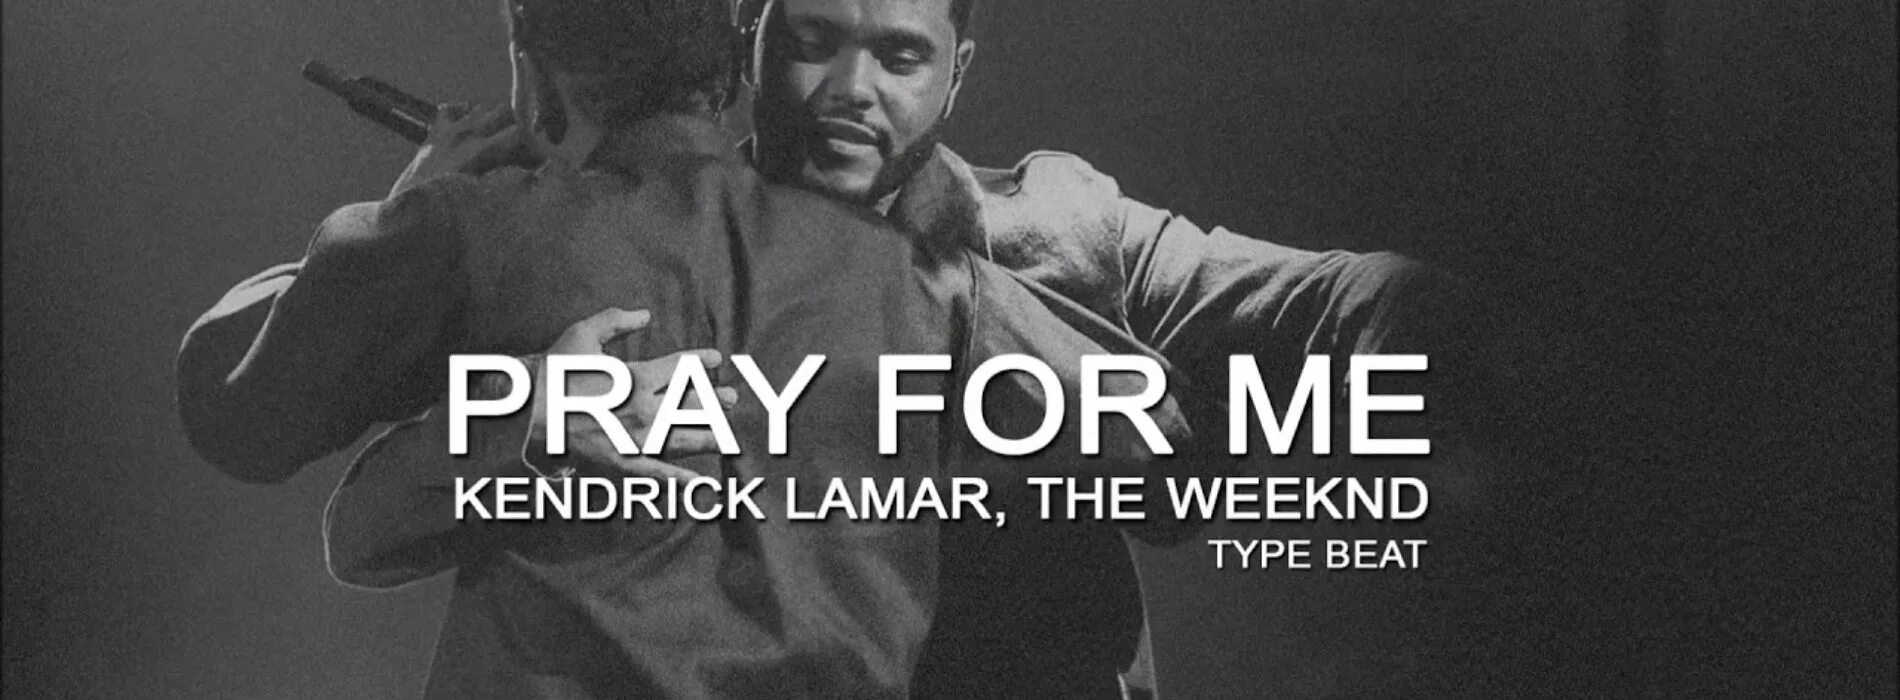 Кендрик Ламар и уикенд. The Weeknd Kendrick Lamar. The Weeknd, Kendrick Lamar - Pray for me. Pray for me. Pray for me the weeknd